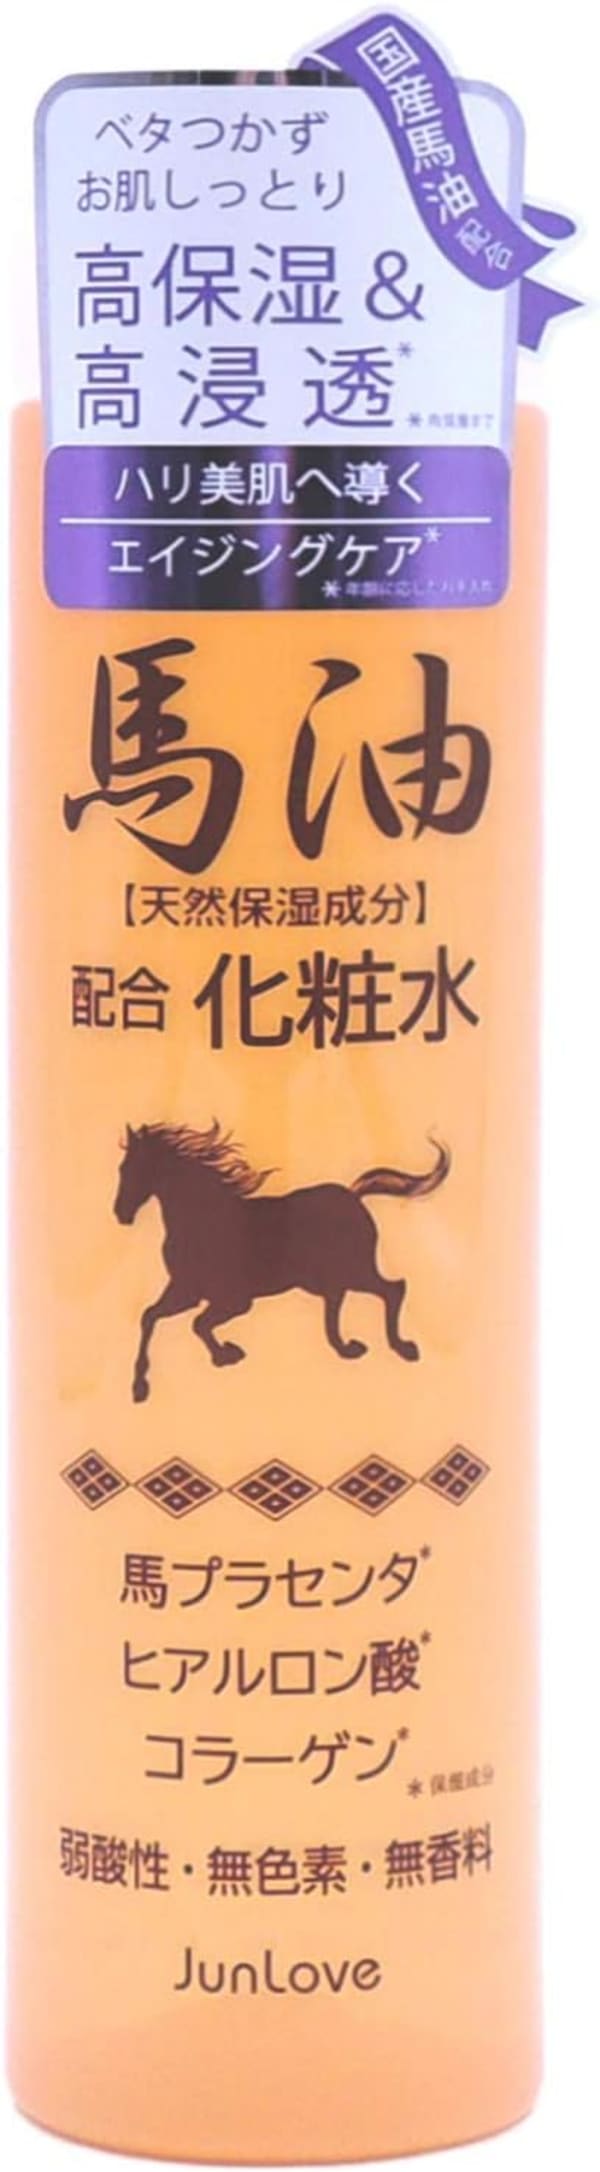 馬プラセンタや保湿成分配合の馬油化粧水